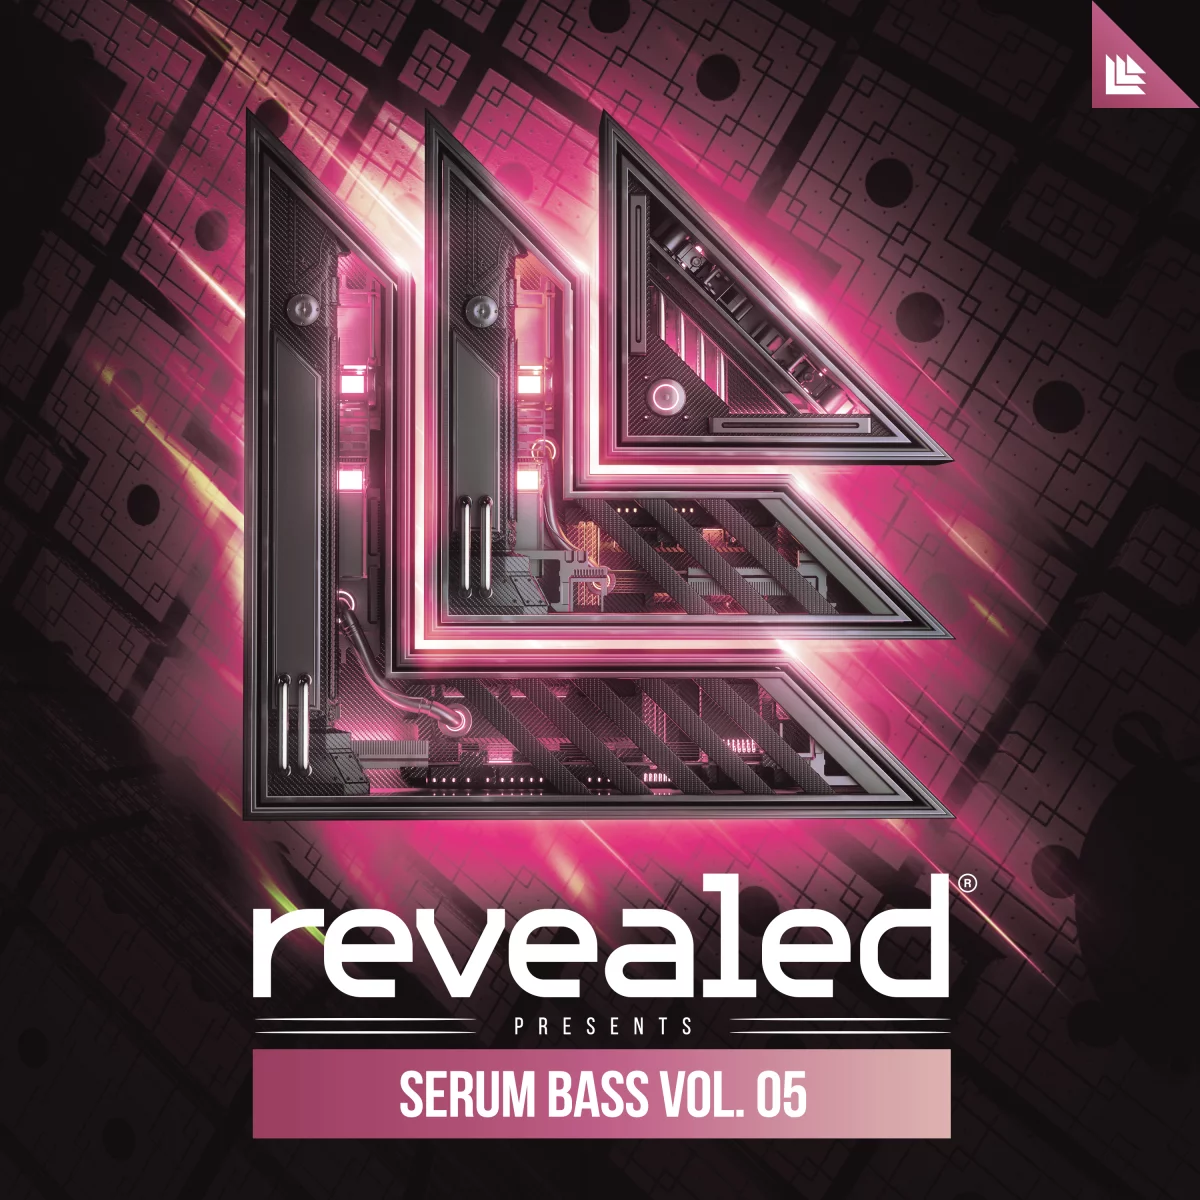 Revealed Serum Bass Vol. 5 - revealedrec⁠ 